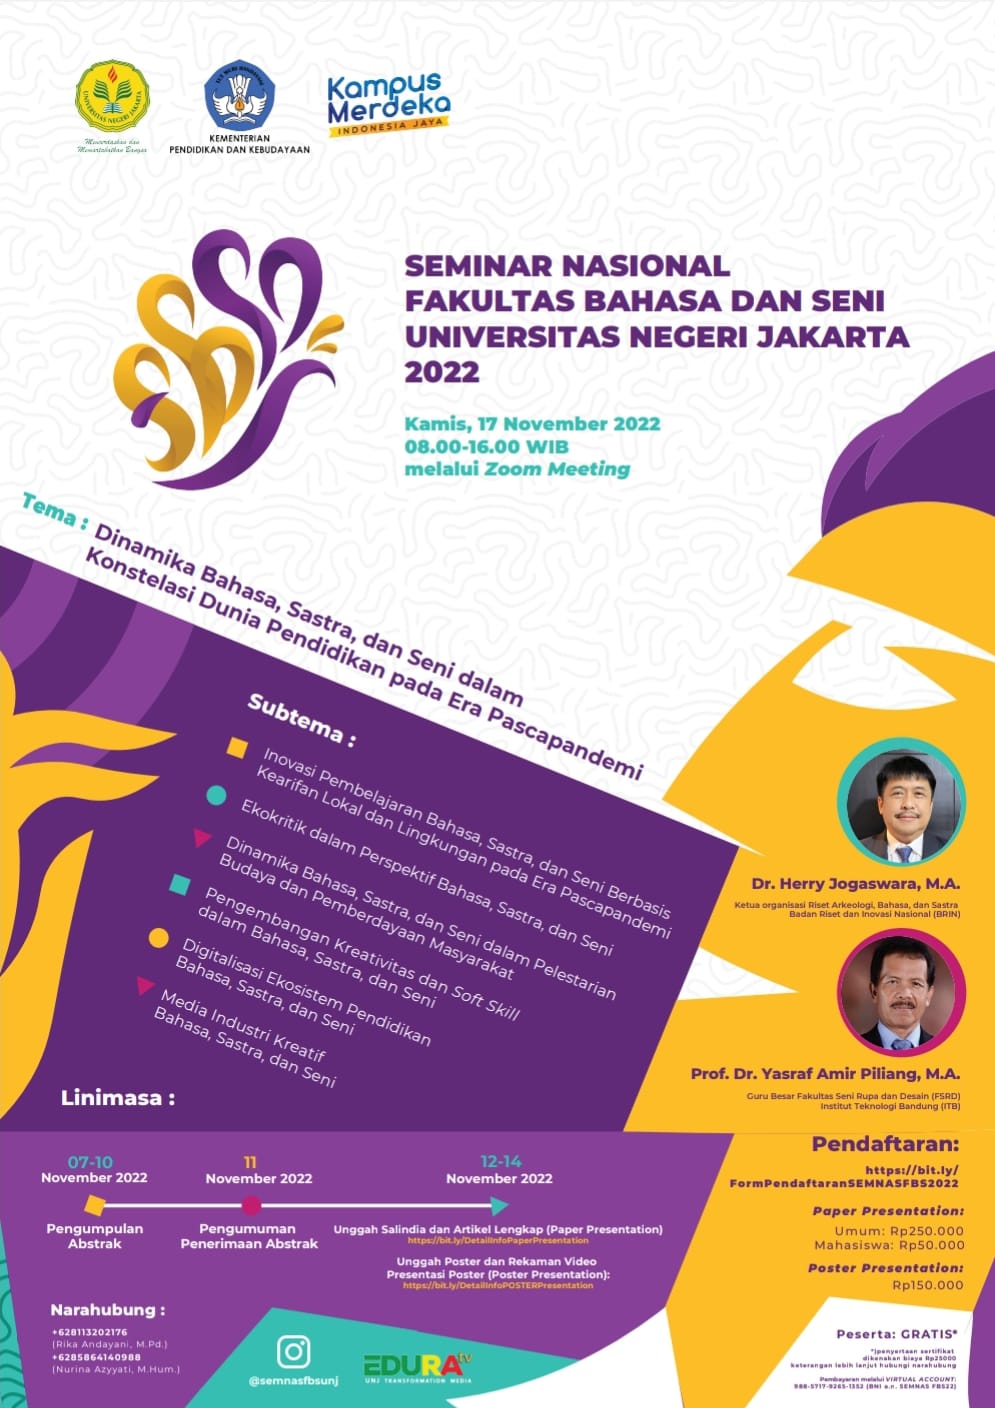 Seminar Nasional Fakultas Bahasa dan Seni UNJ 2022